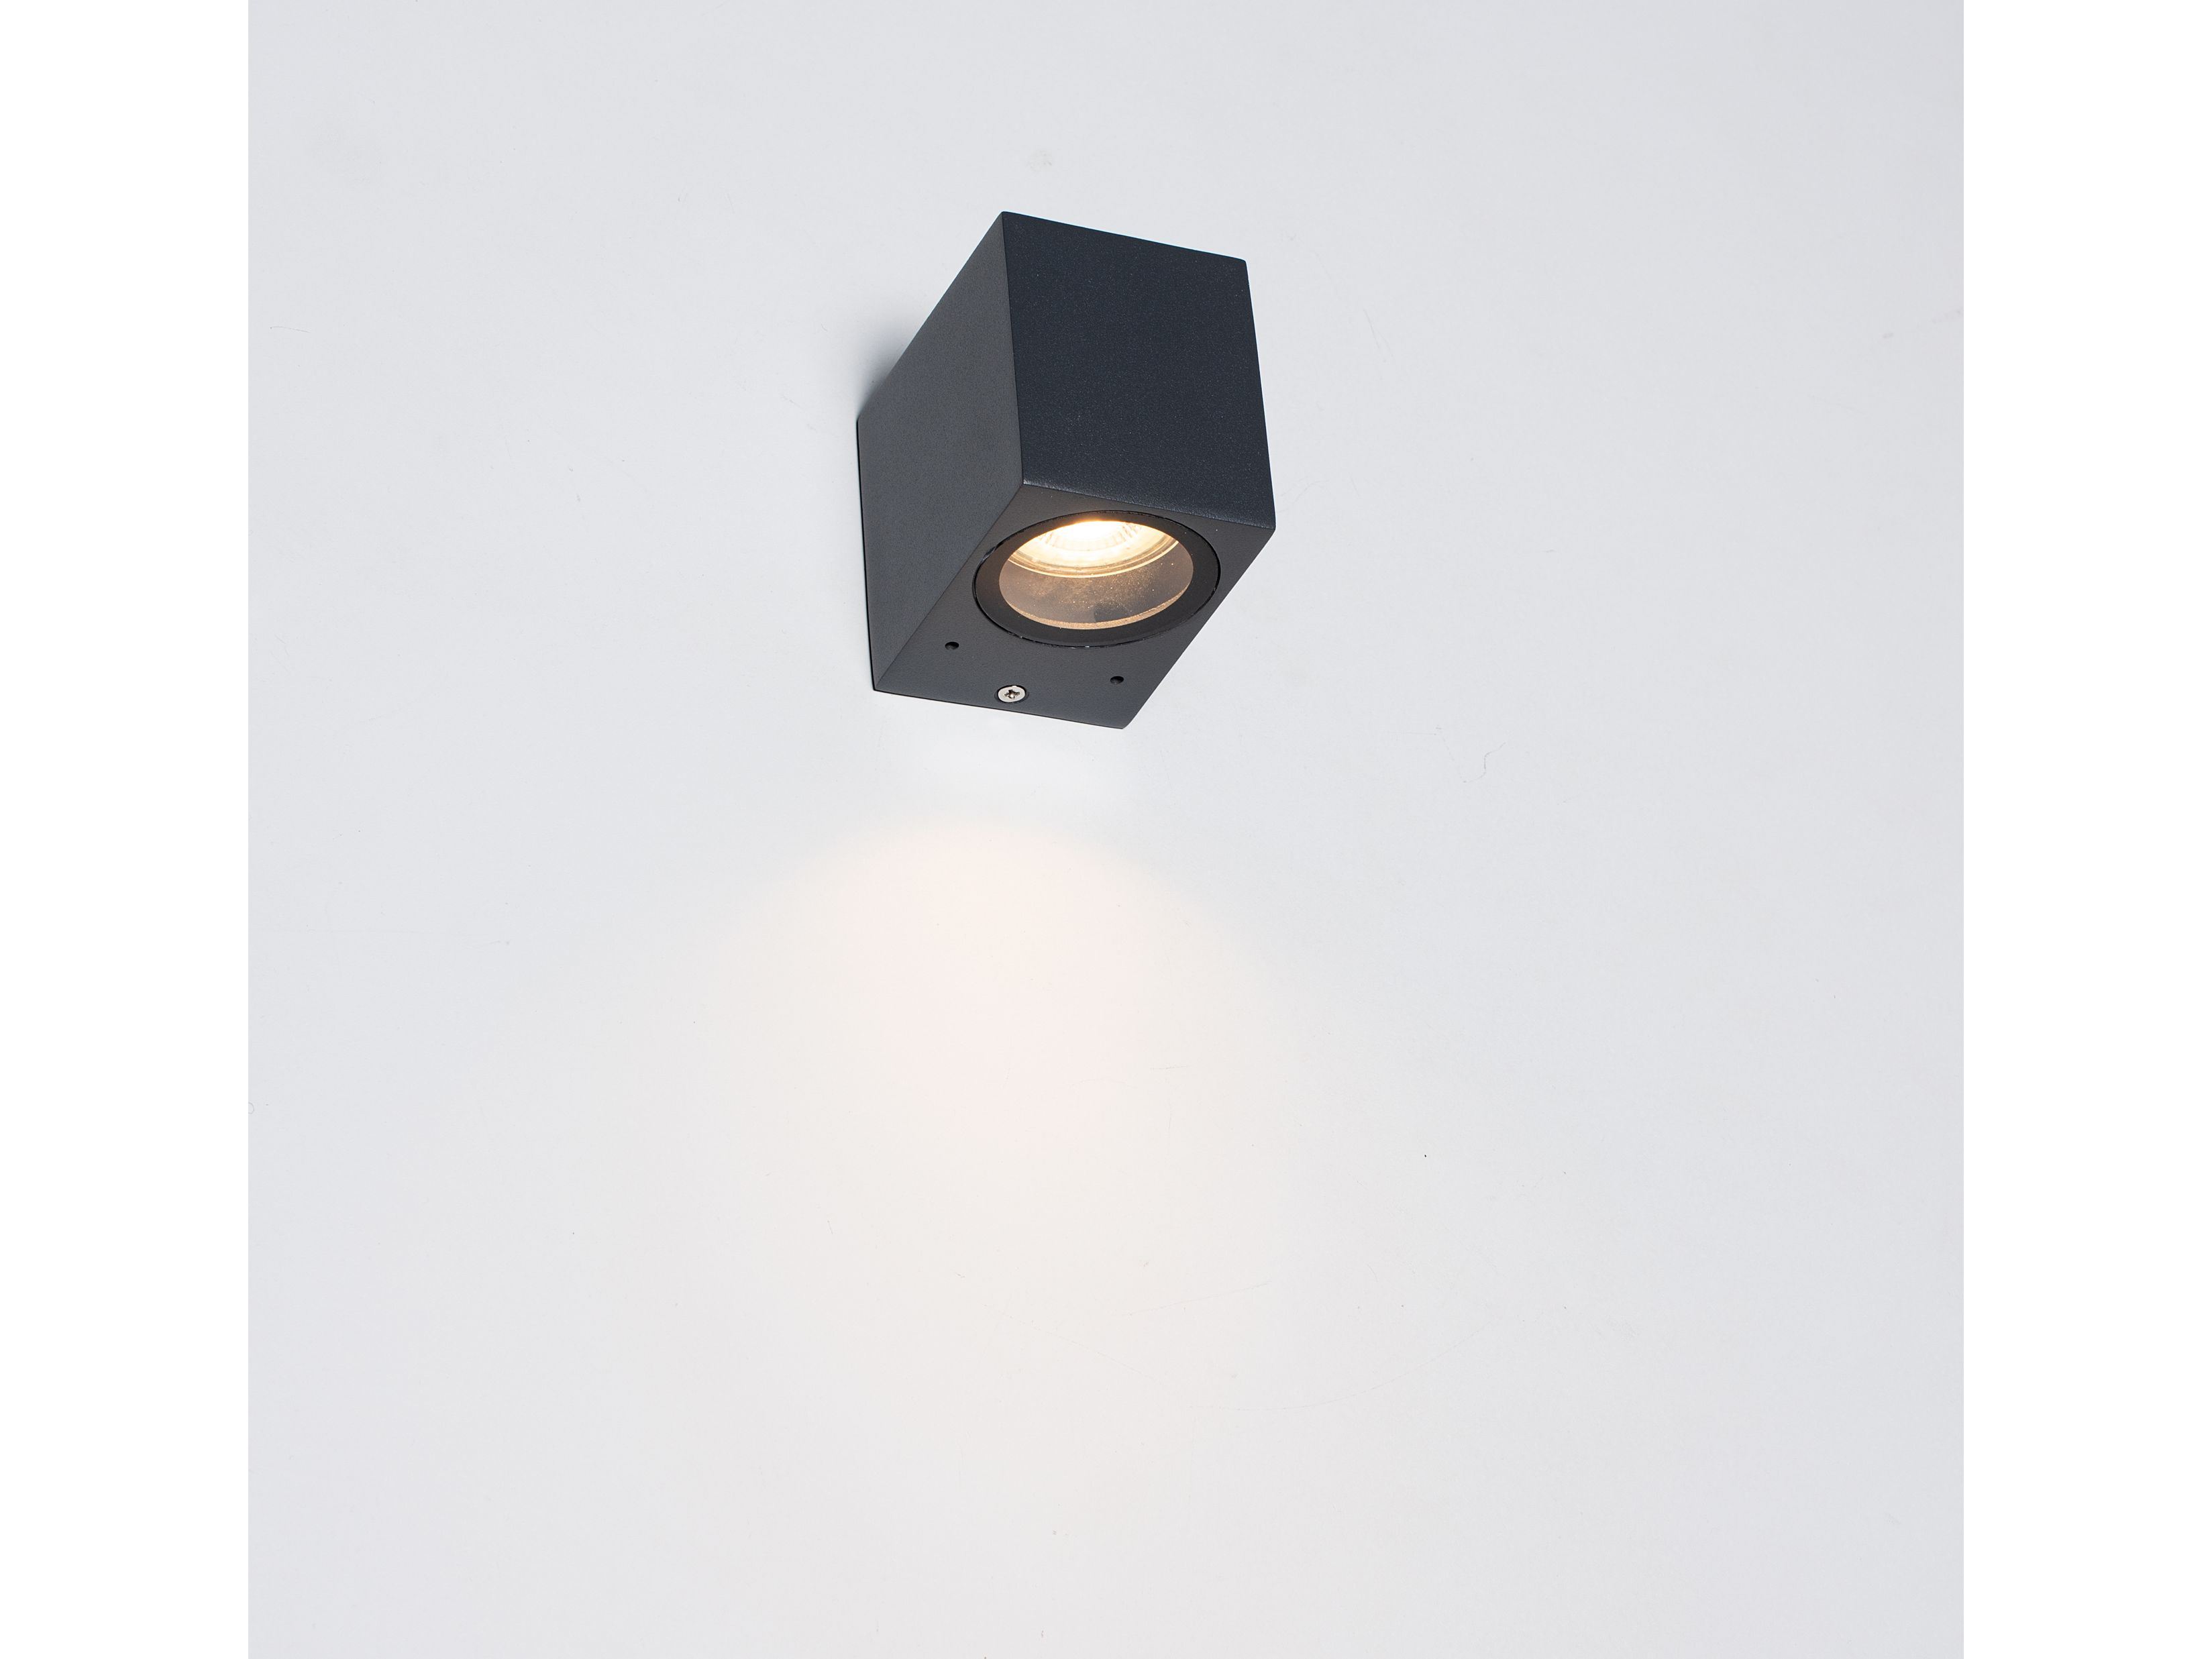 2x-leds-light-buitenlamp